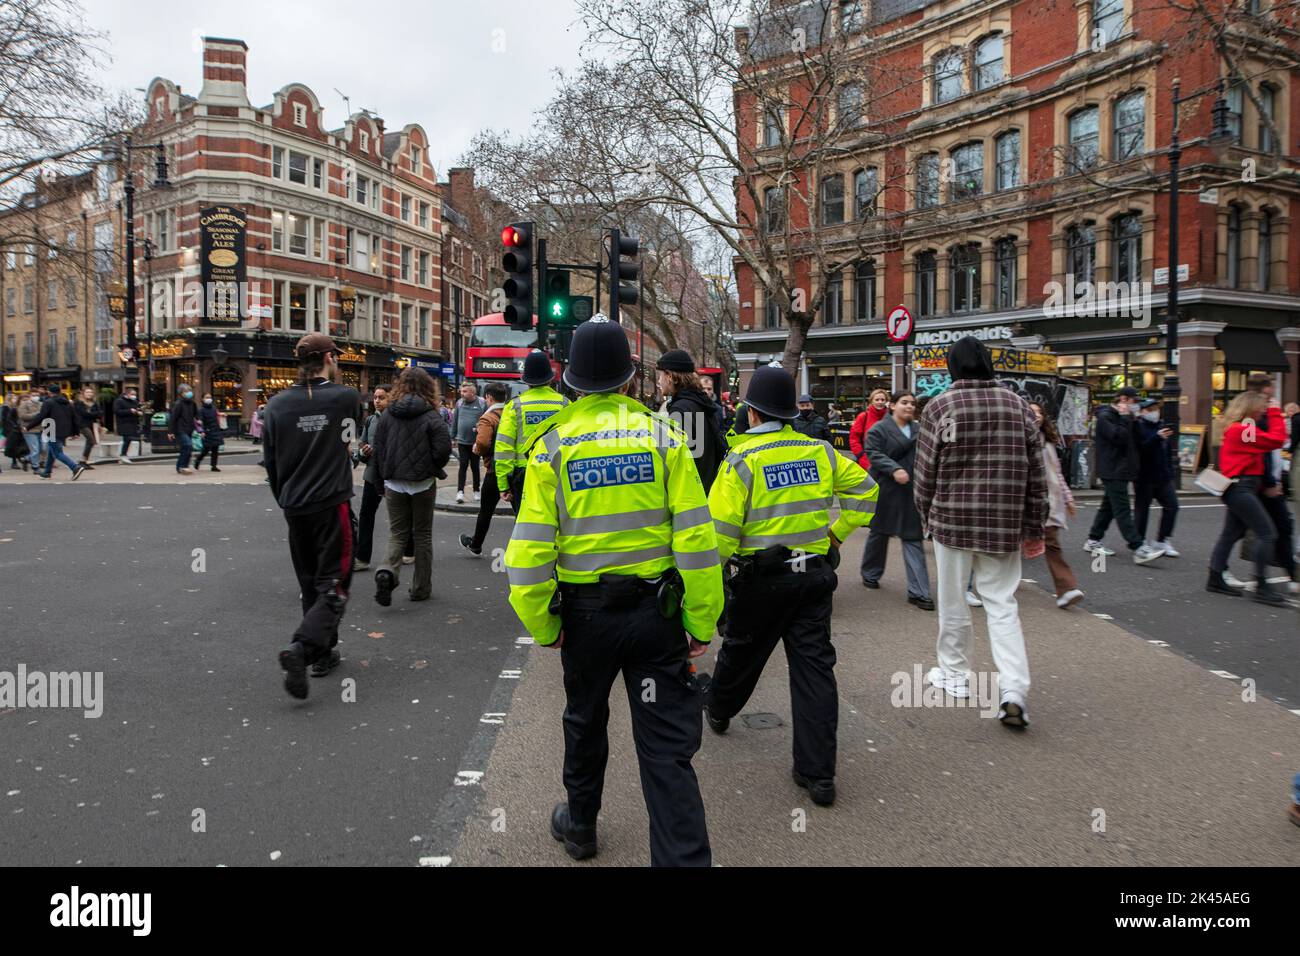 Polizisten, die in Sakkos über den Cambridge Circus im Zentrum Londons laufen Stockfoto